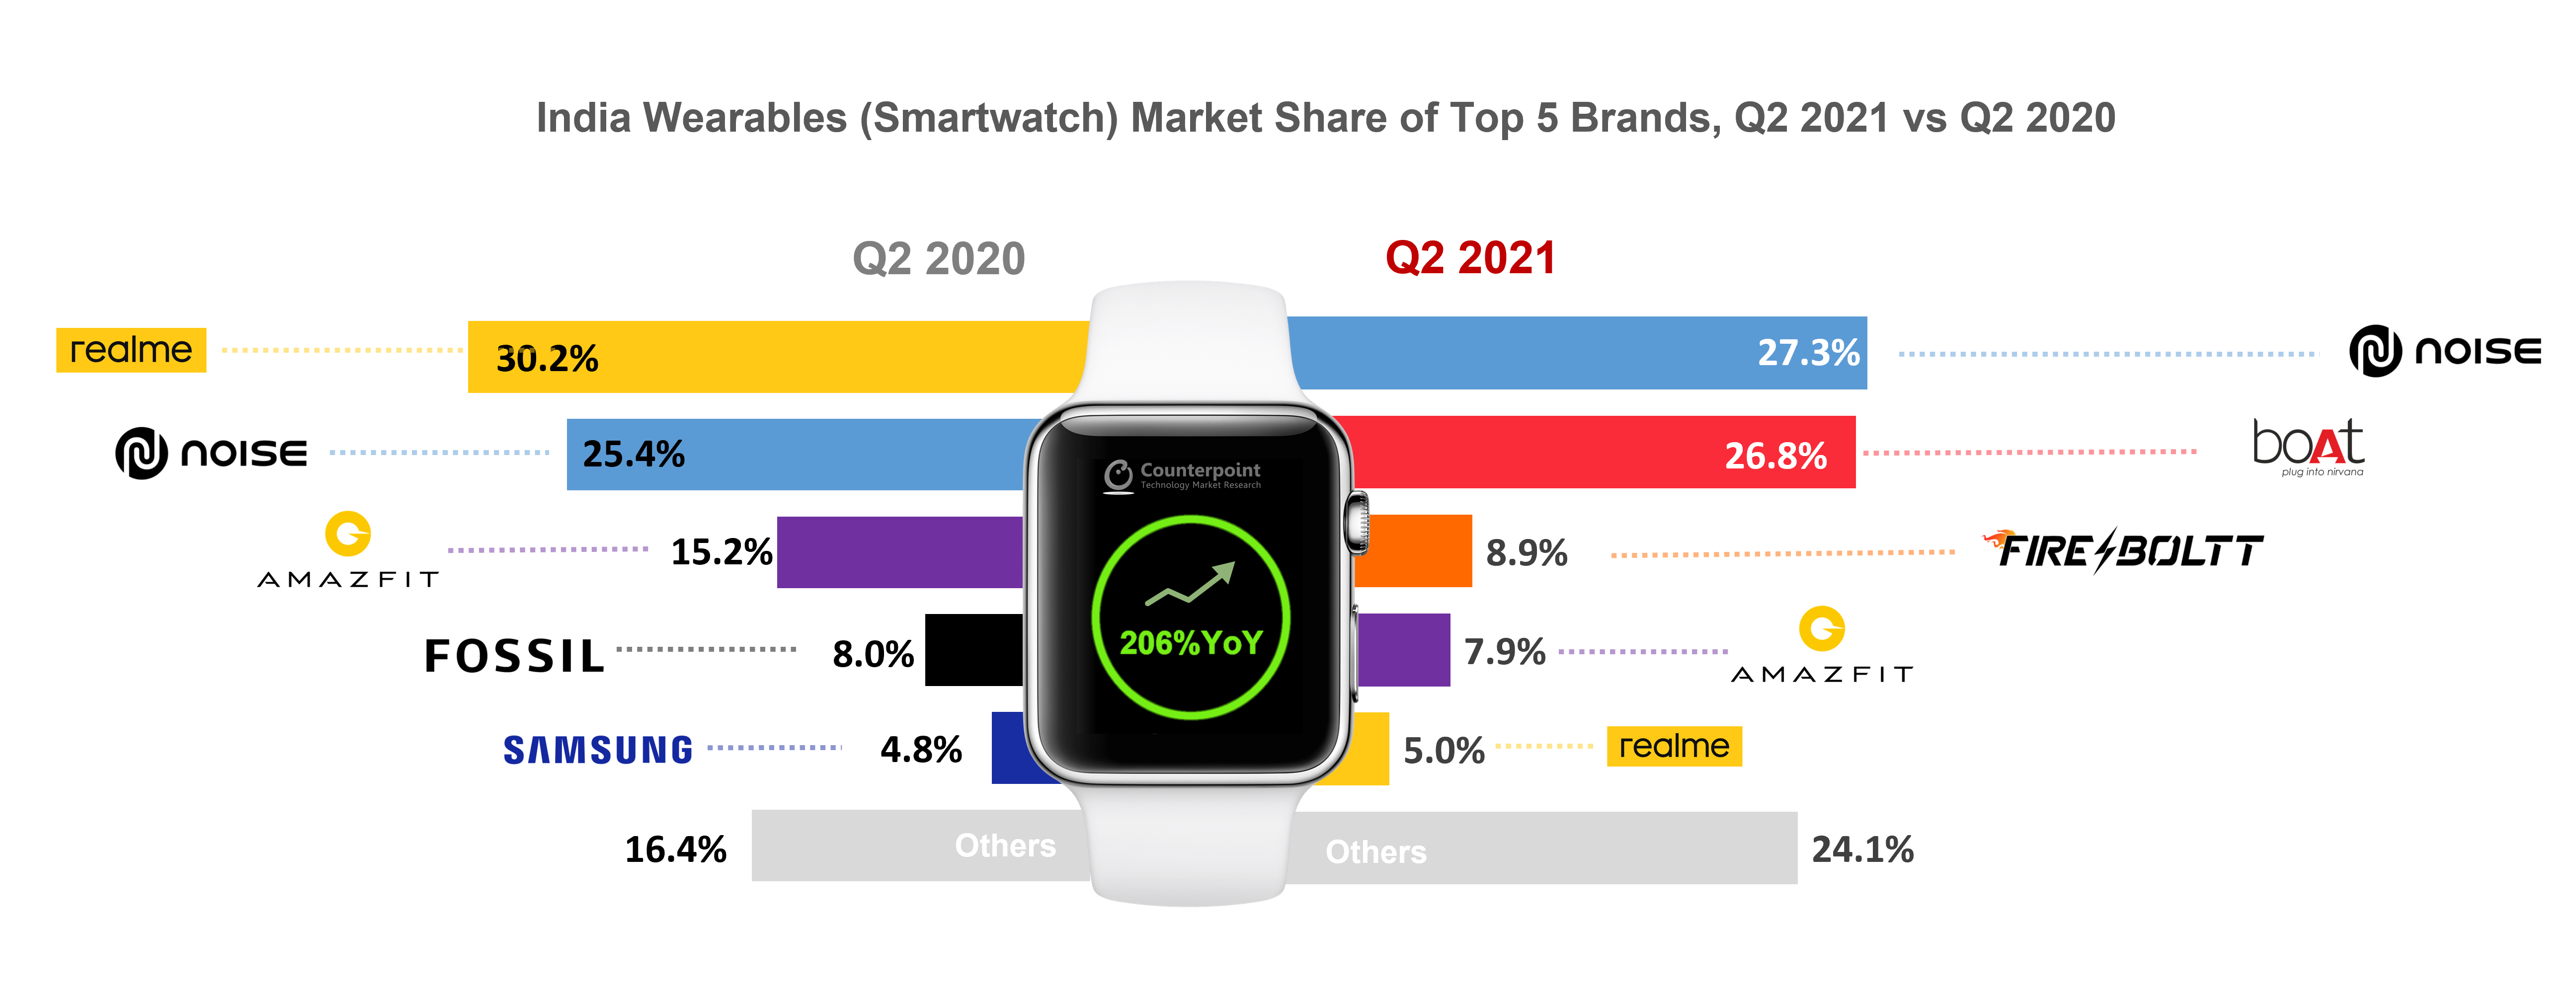 印度前5大品牌的可穿戴设备(智能手表)市场份额，2021年第二季度vs 2020年第二季度